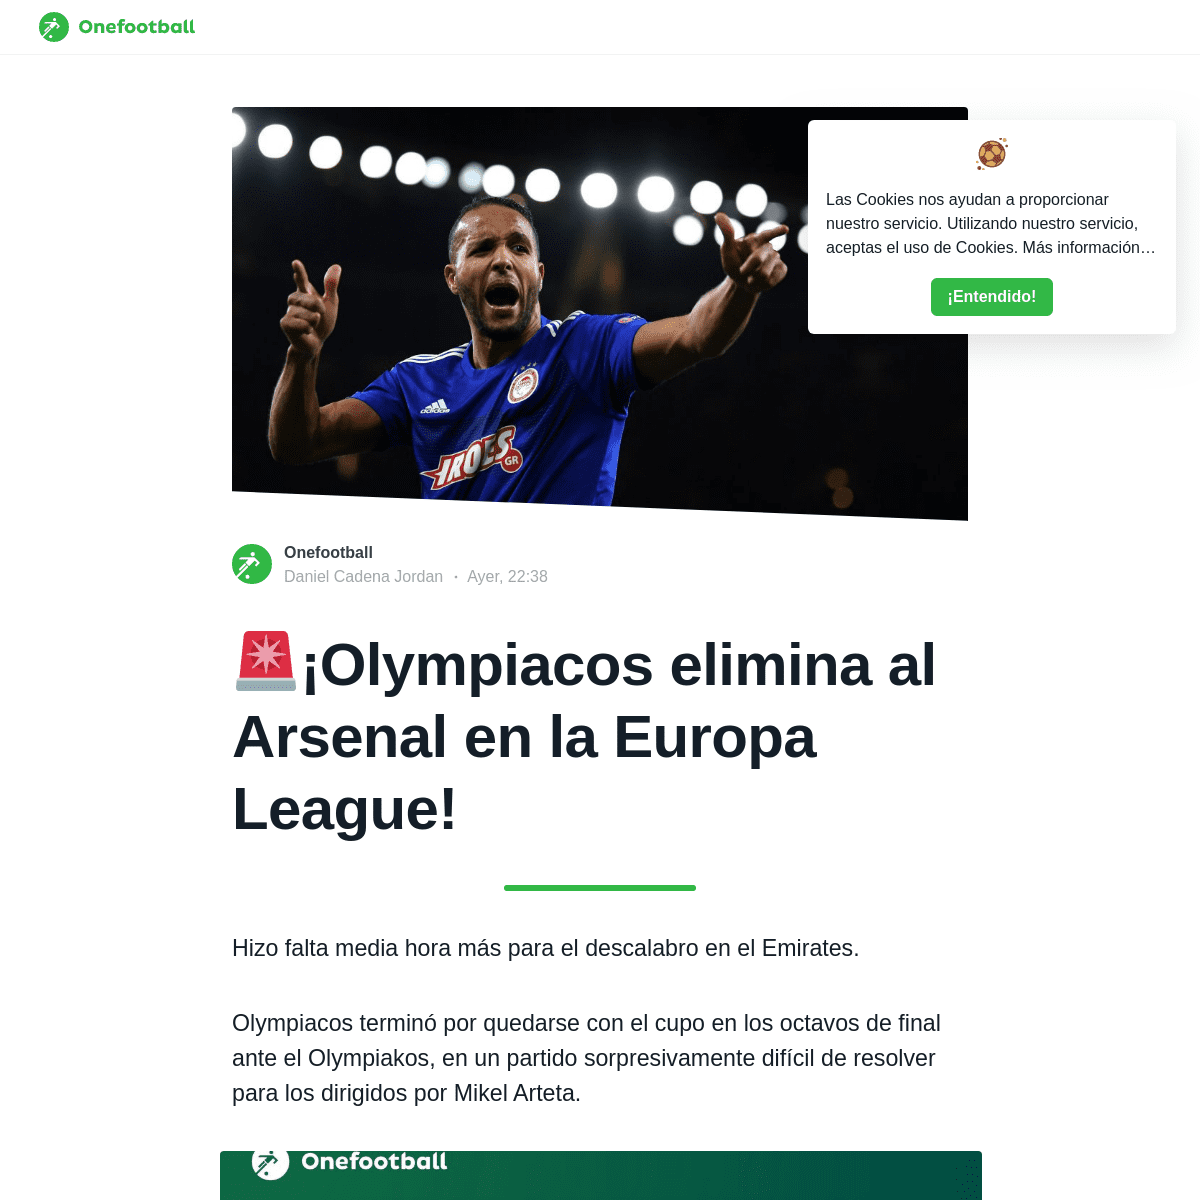 ðŸš¨Â¡Olympiacos elimina al Arsenal en la Europa League! - Onefootball EspaÃ±ol